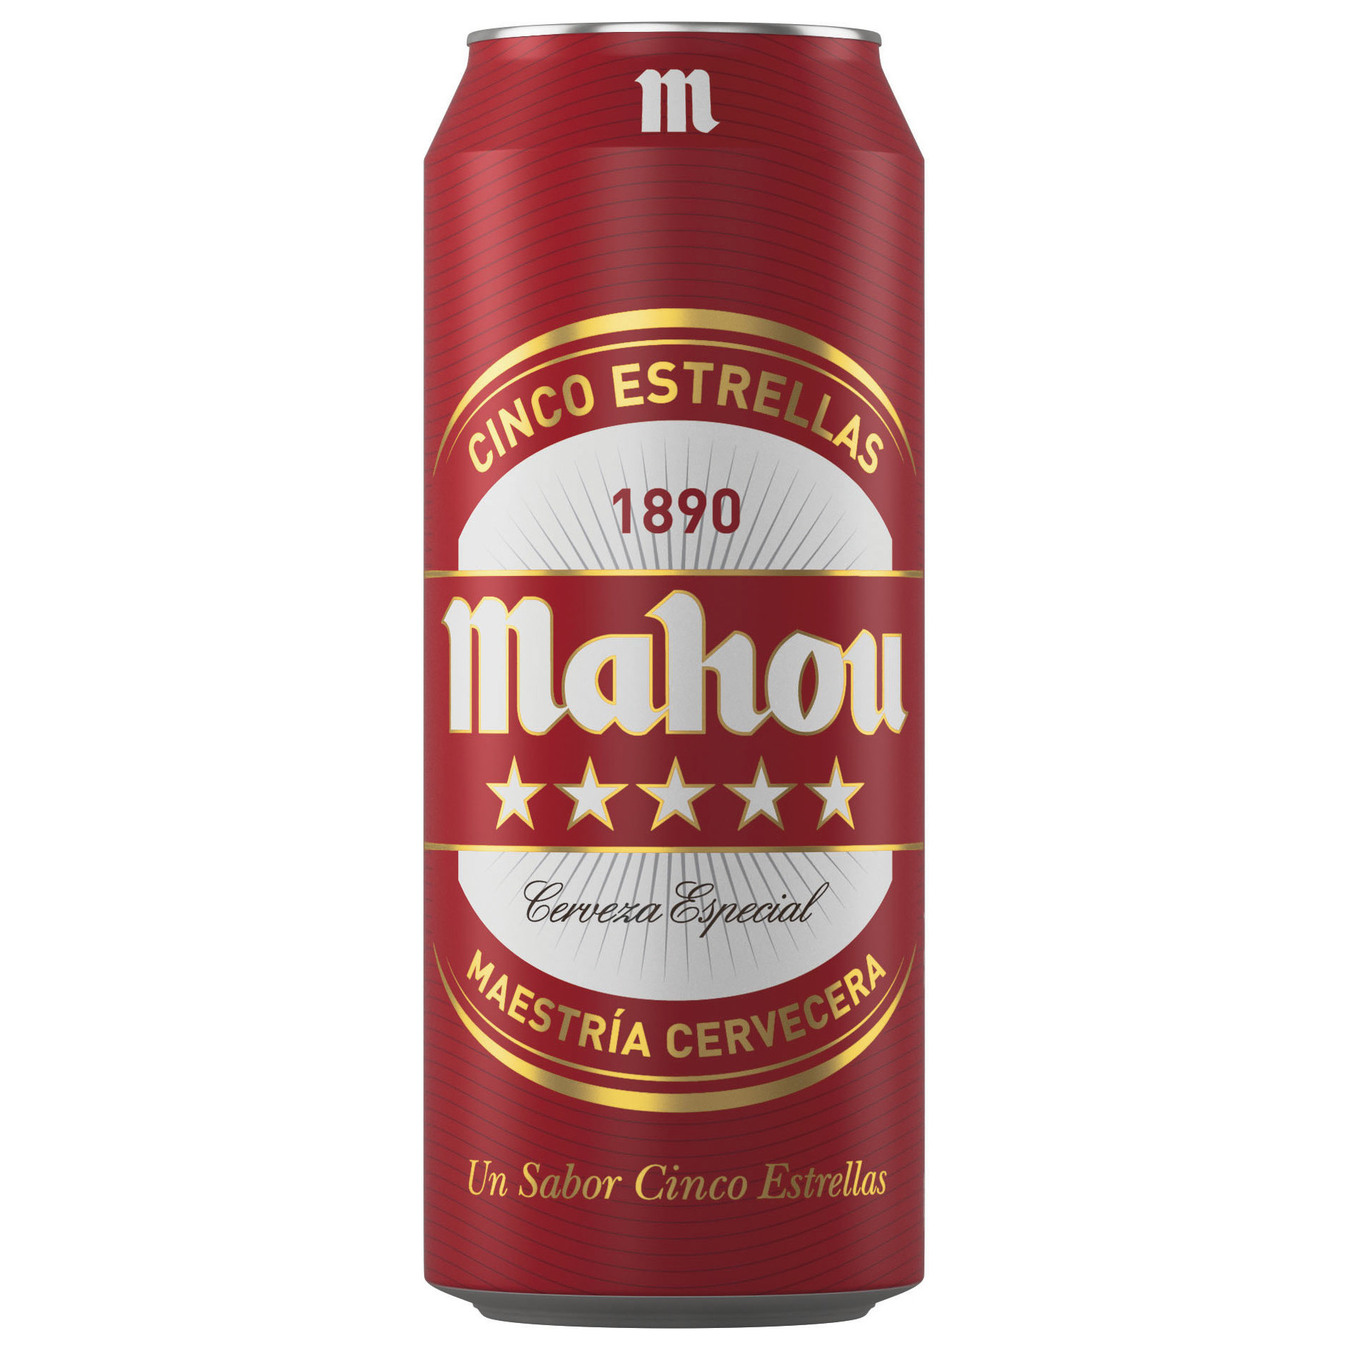 Пиво світле Mahou 5 estrellas 5,5% 0,5л залізна банка